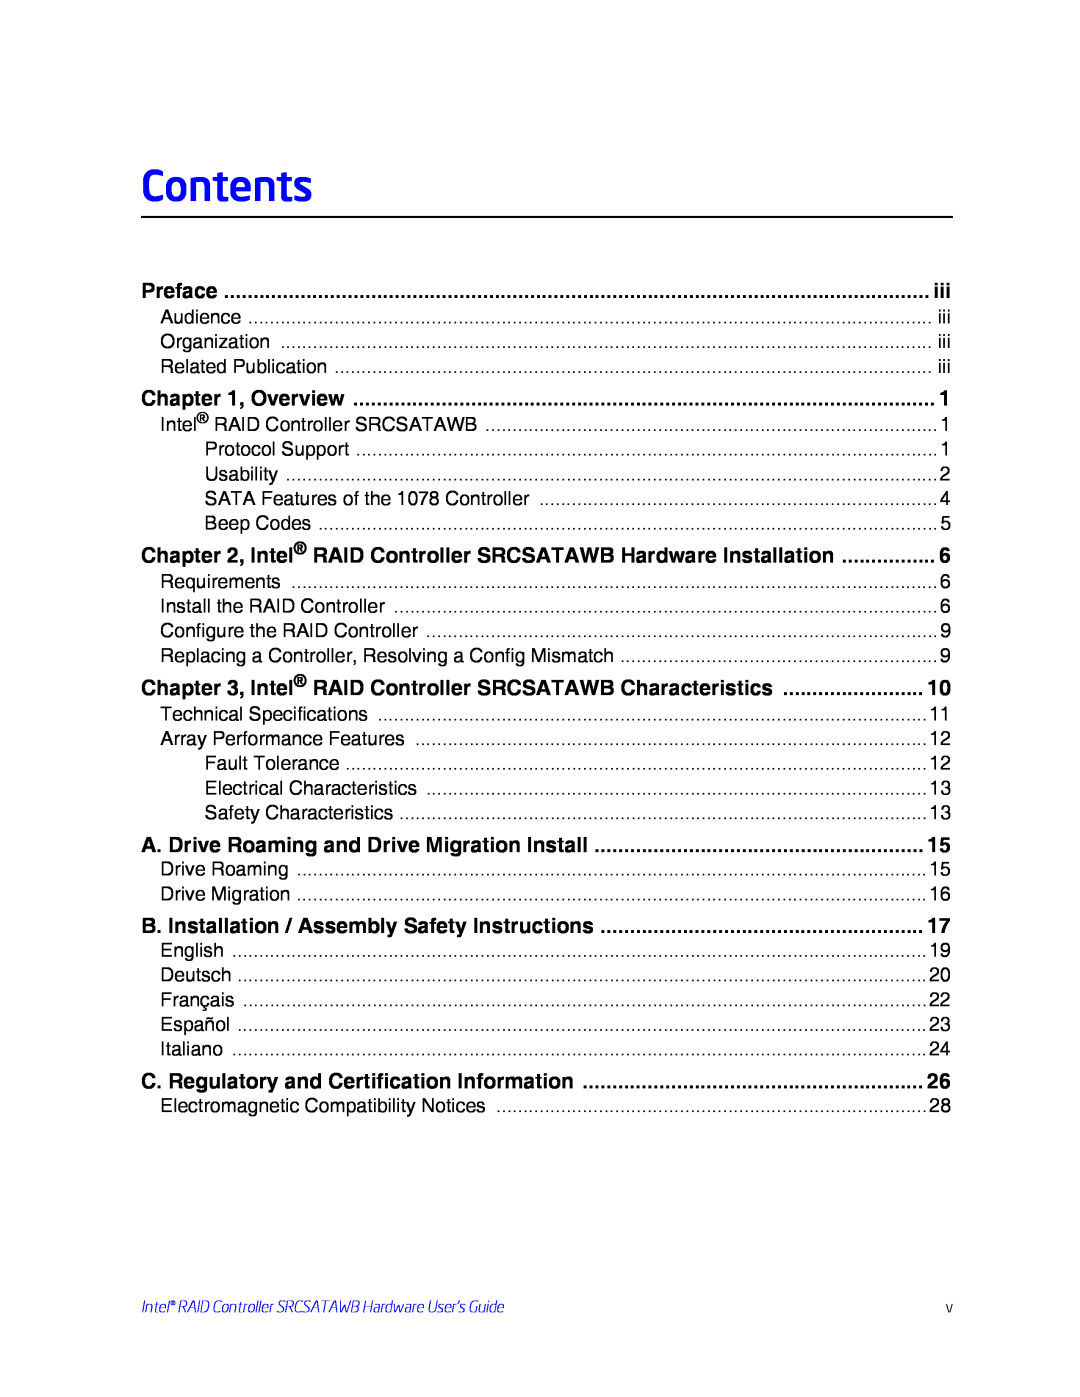 Intel SRCSATAWB manual Contents 